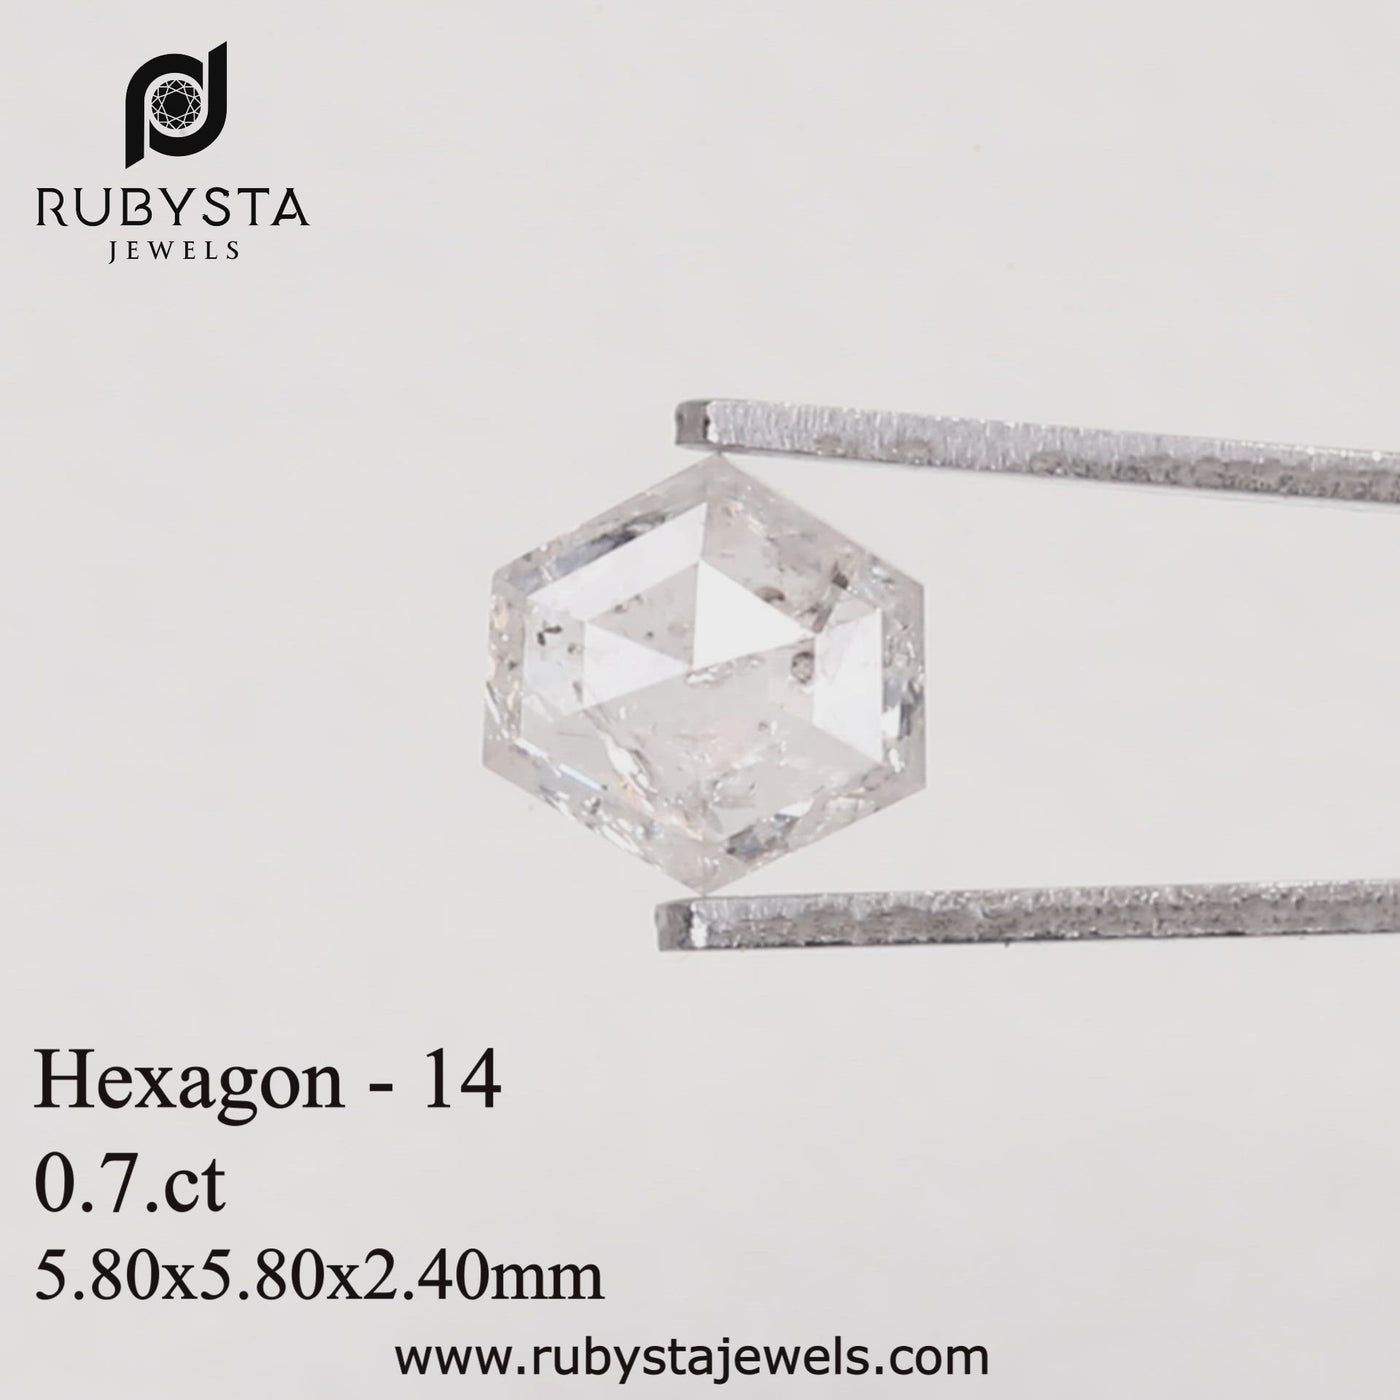 H14 - Salt and pepper hexagon diamond